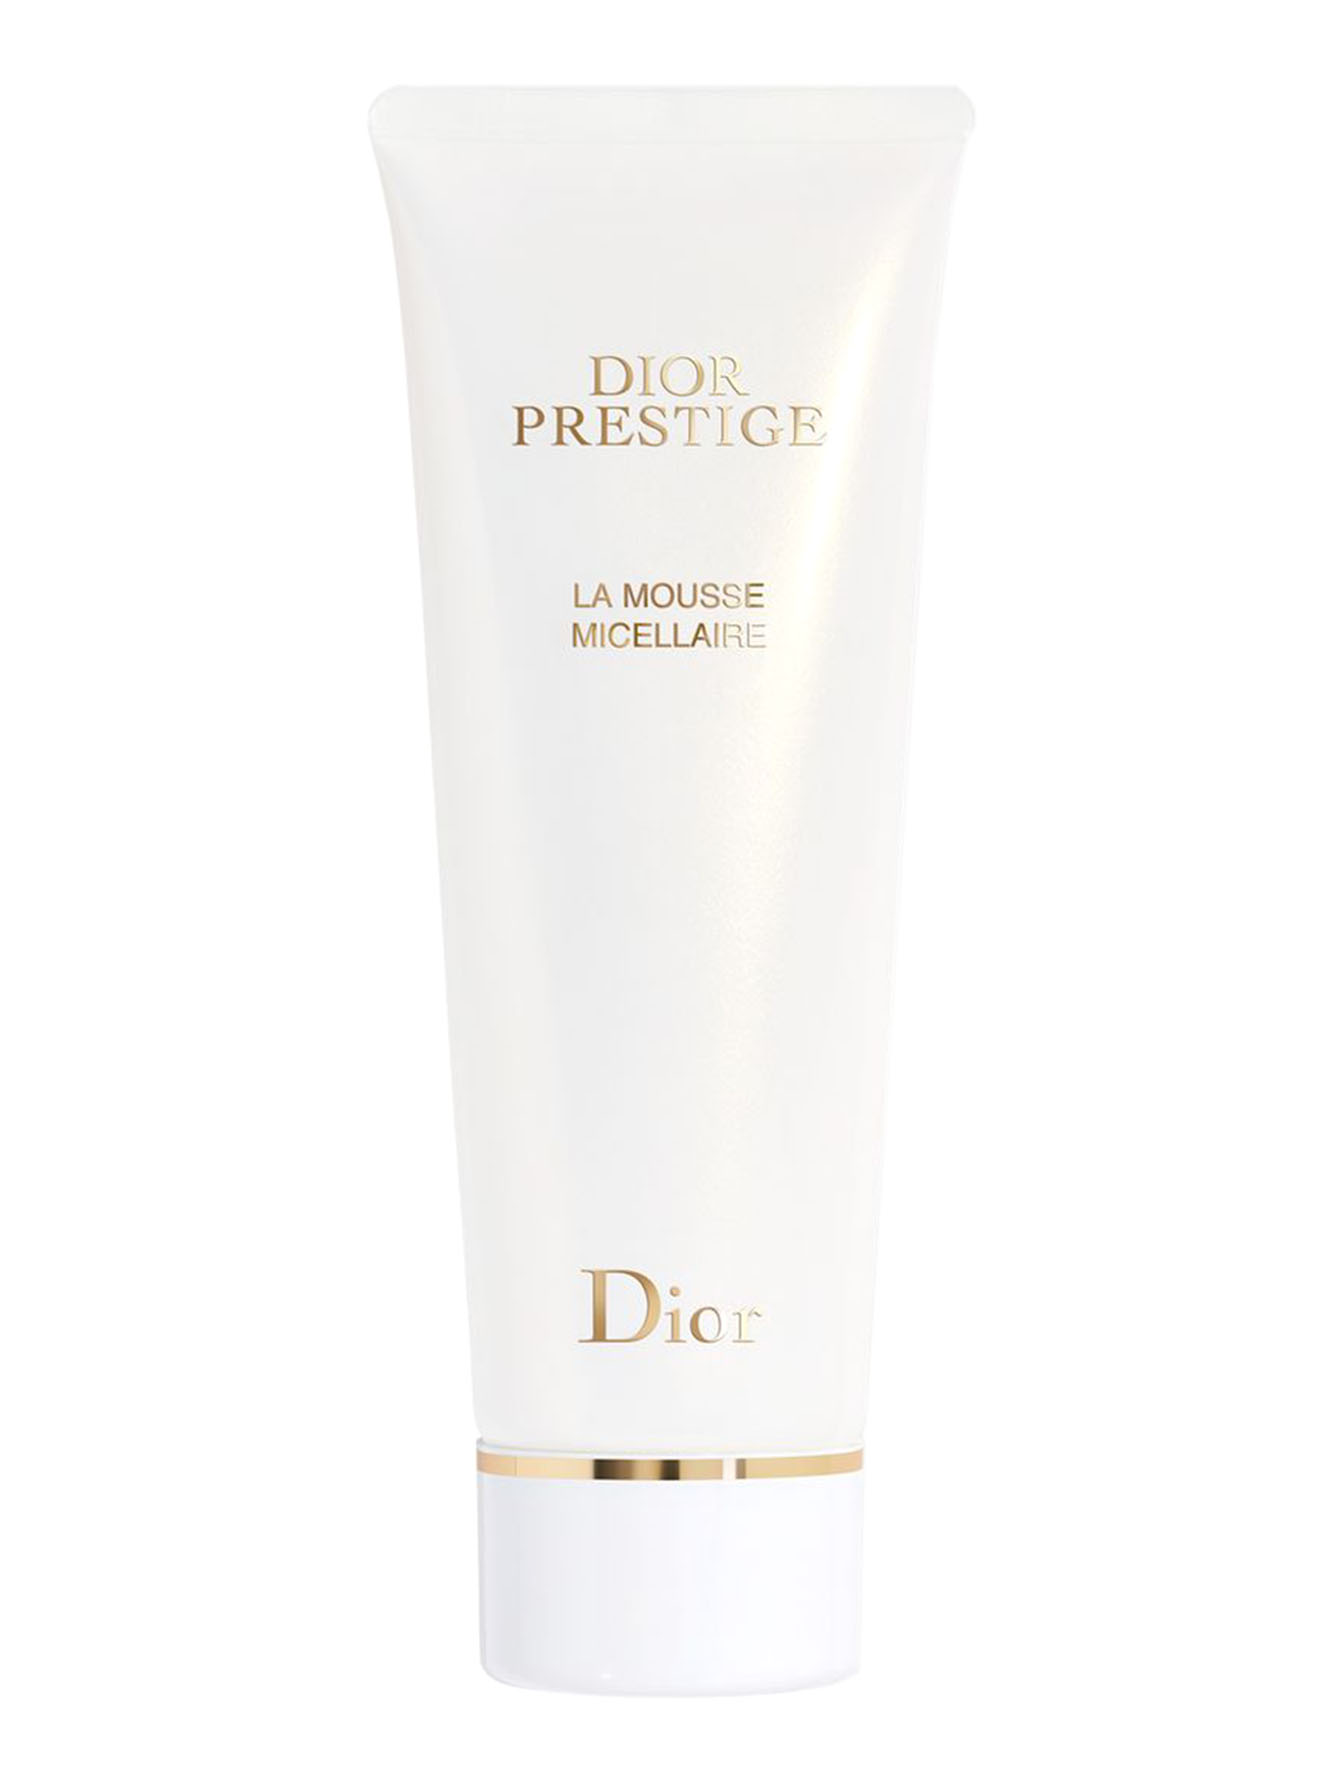 Очищающий мусс Dior Prestige, 120 г - Общий вид